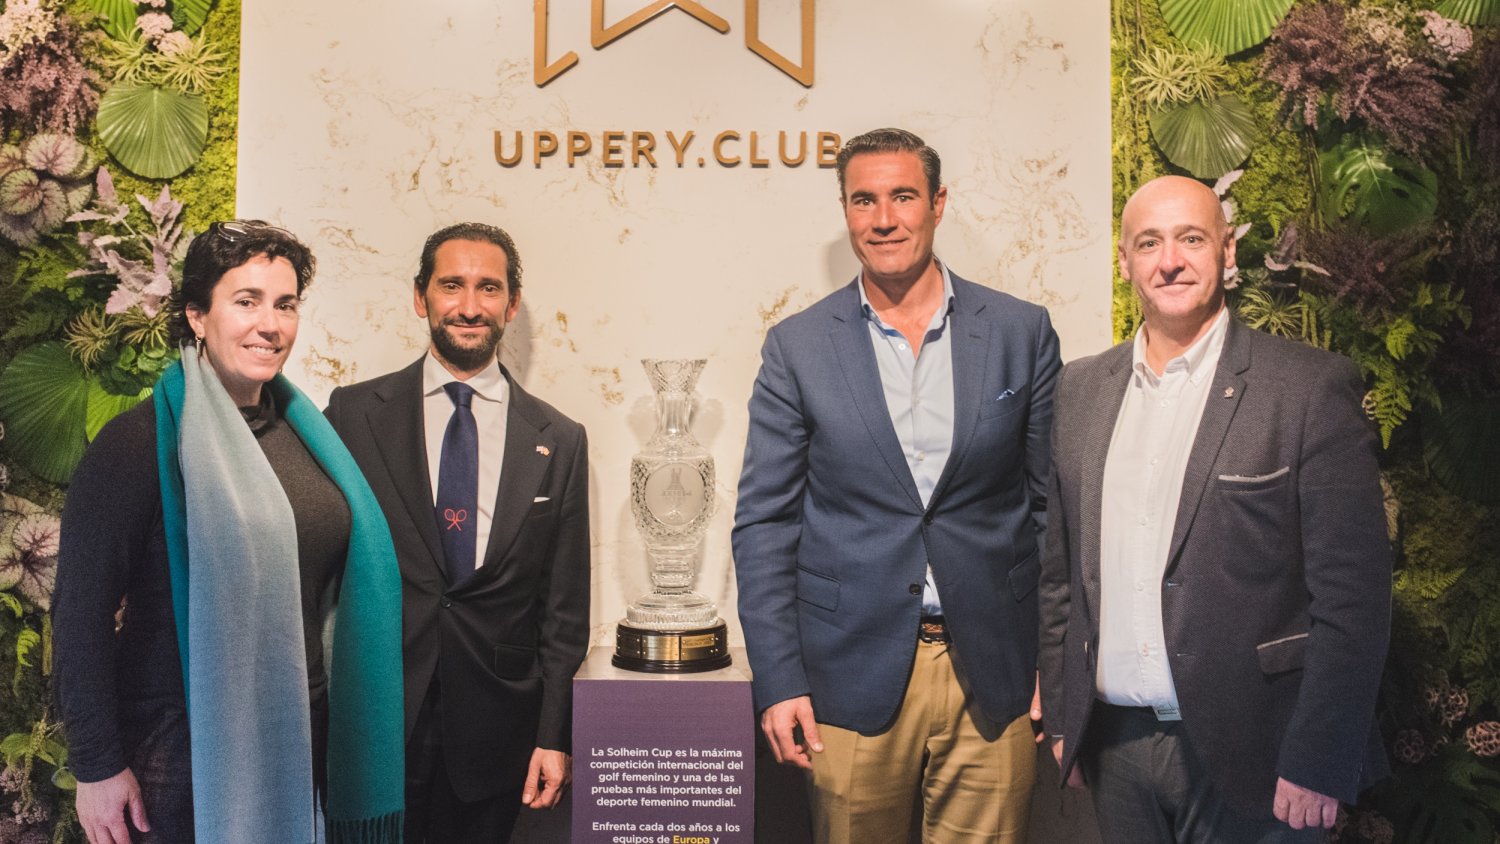 Uppery Club recibe el trofeo de la Solheim Cup en el periplo del viaje de la copa por la provincia